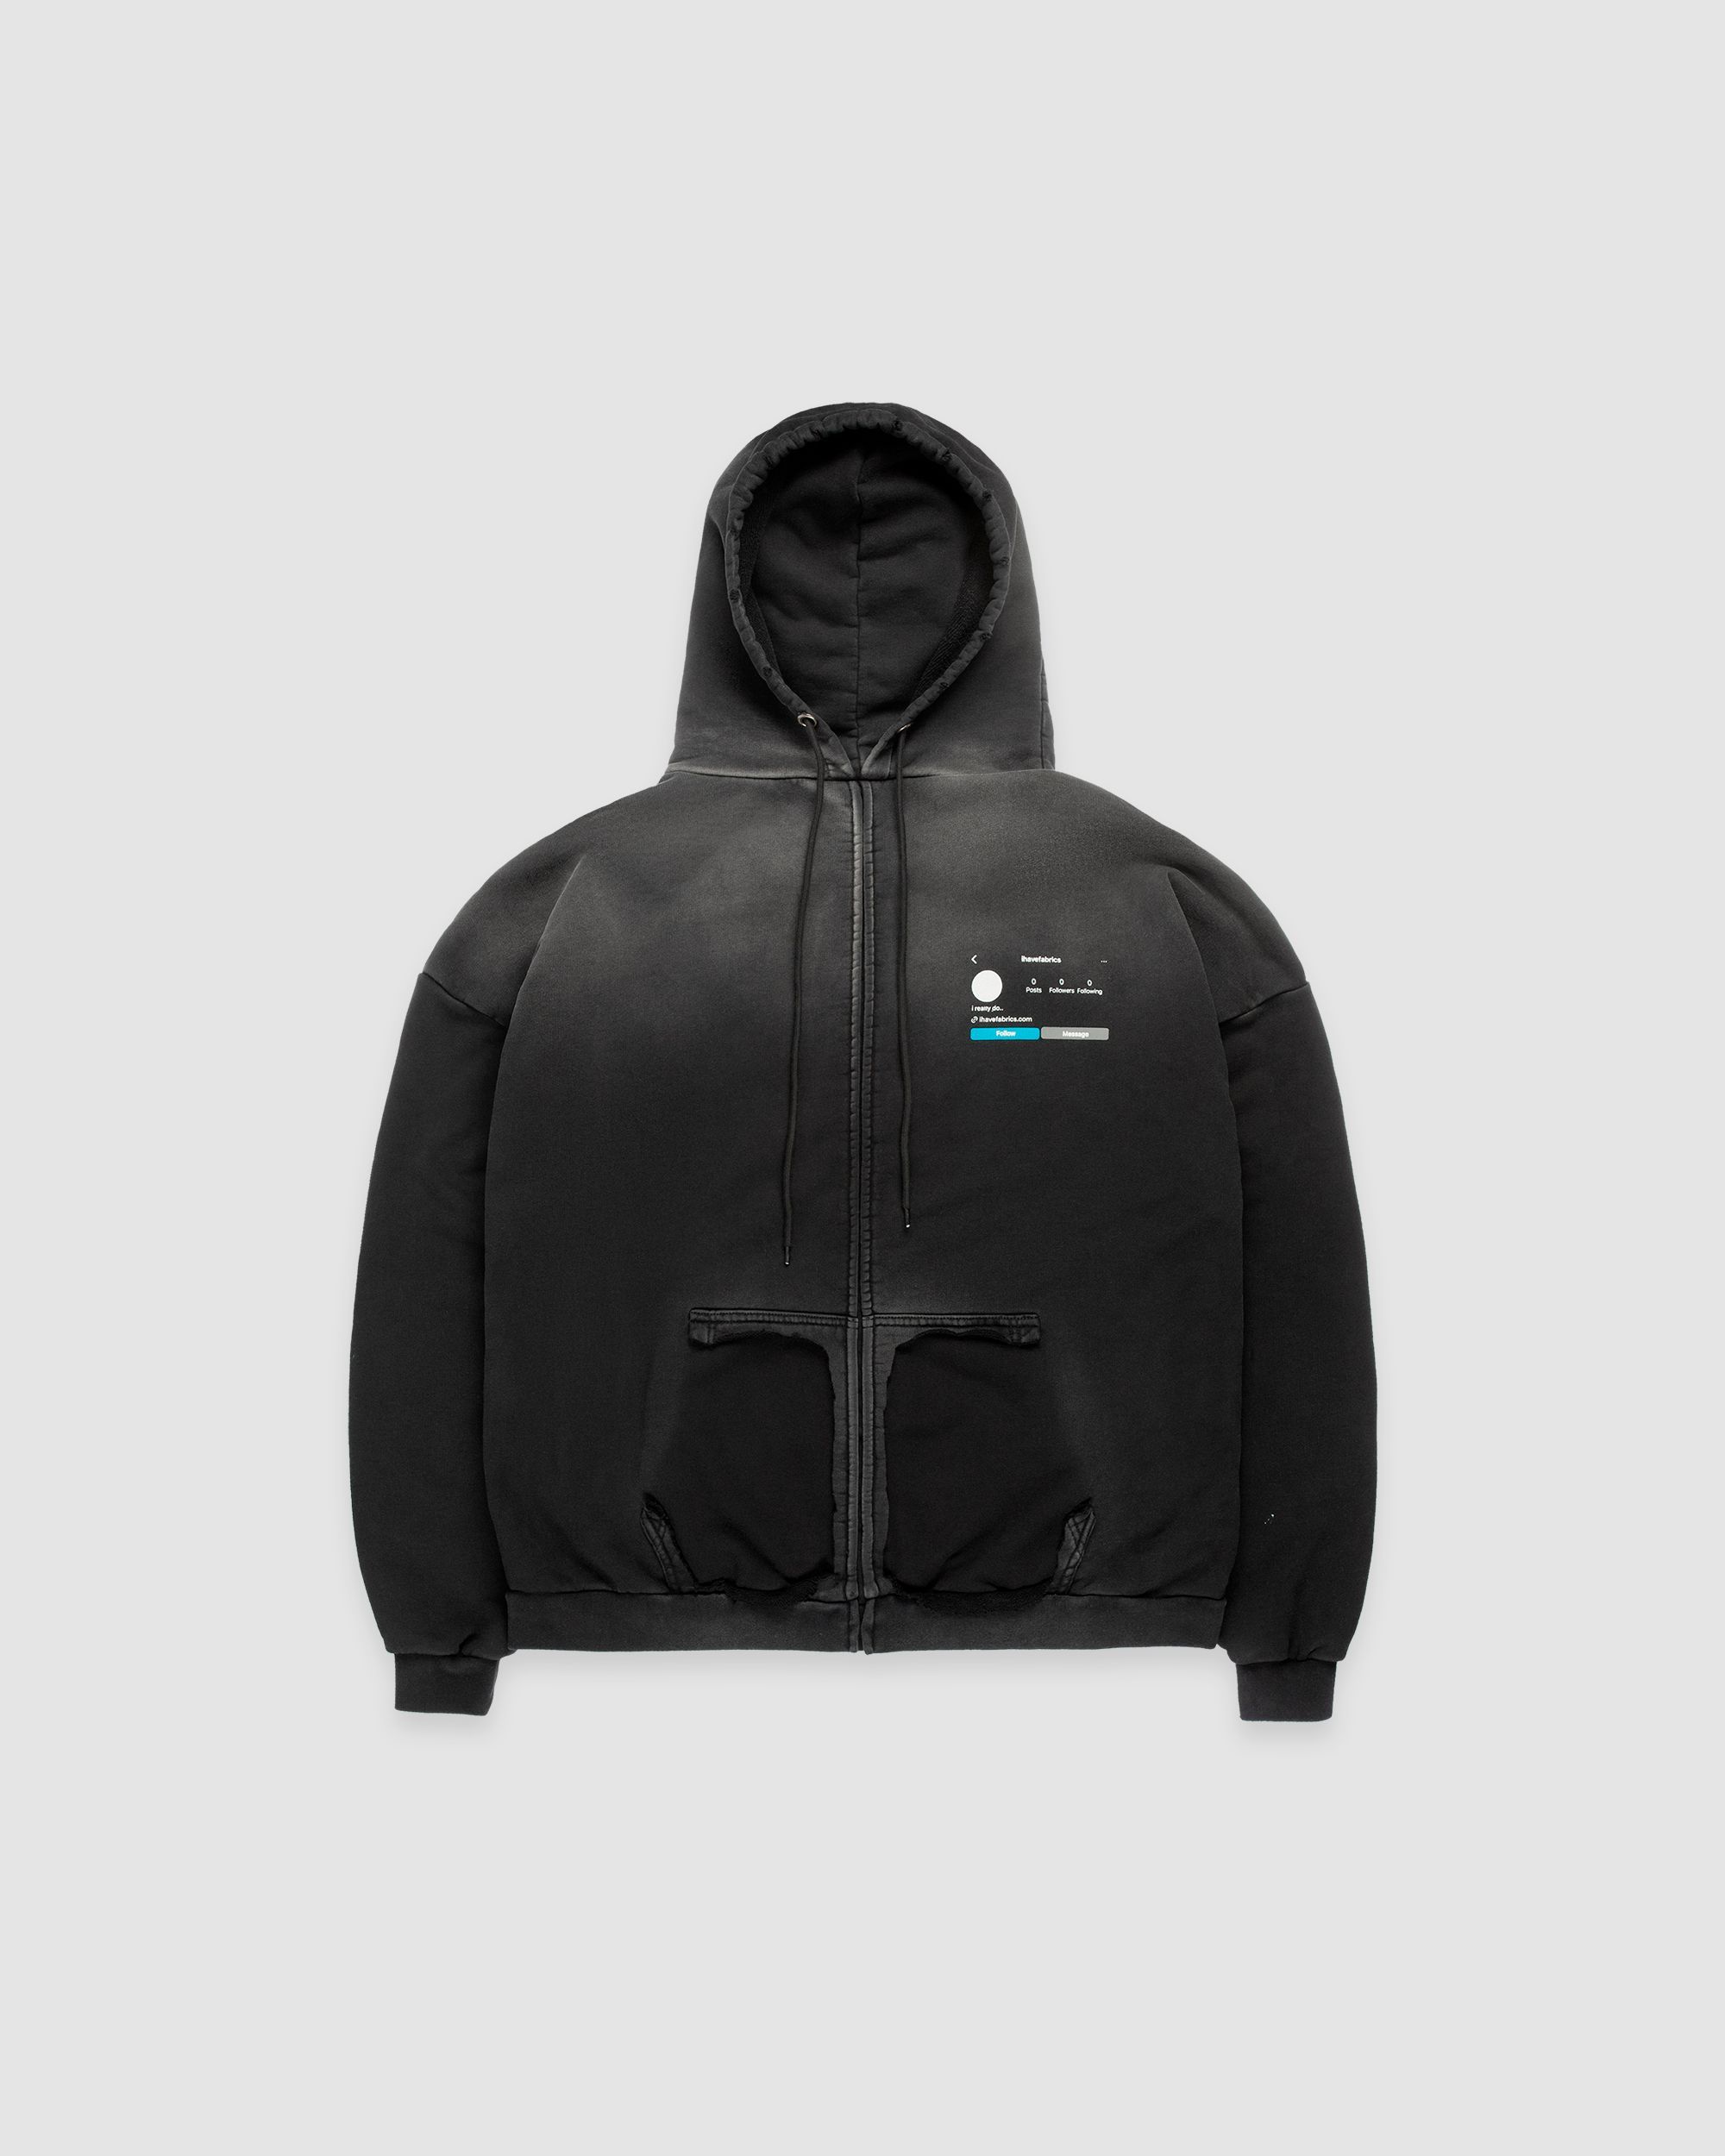 'anon' zip hoodie